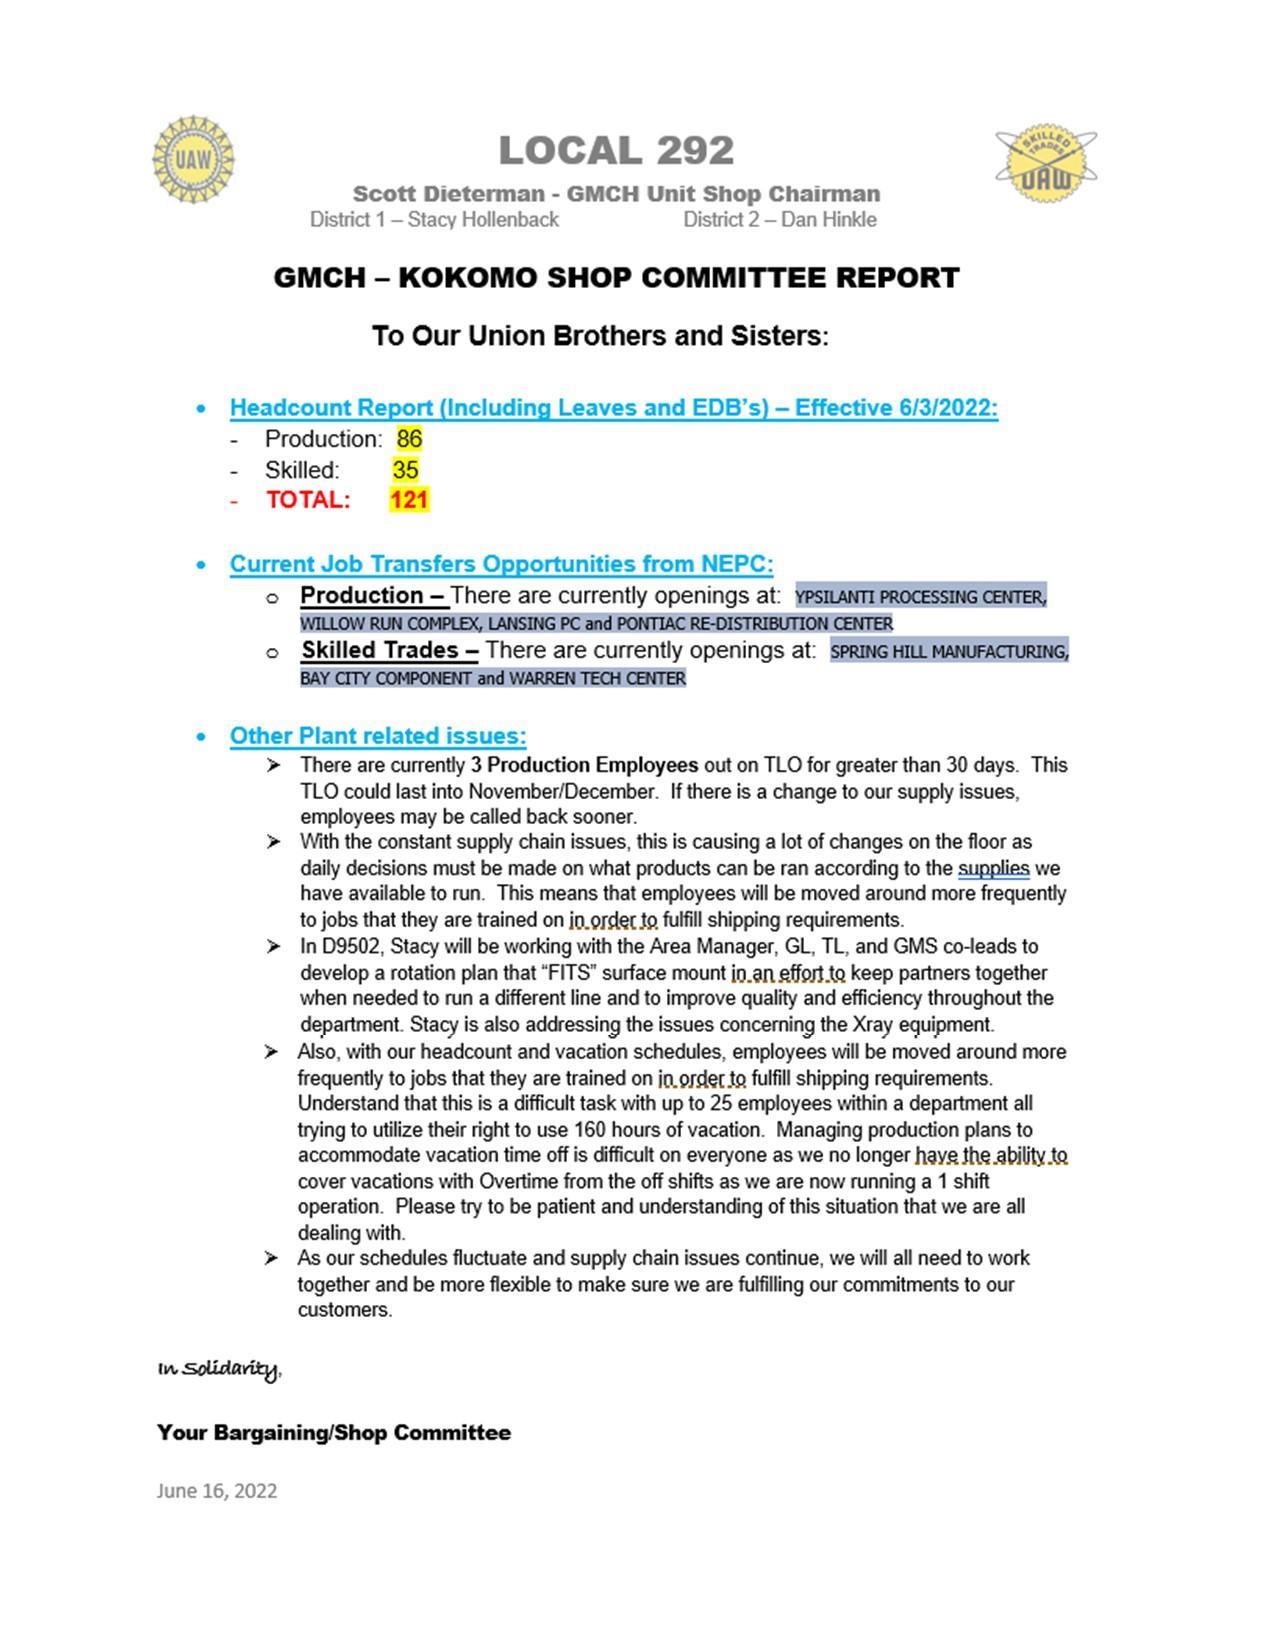 June 2022 Shop Committee Report